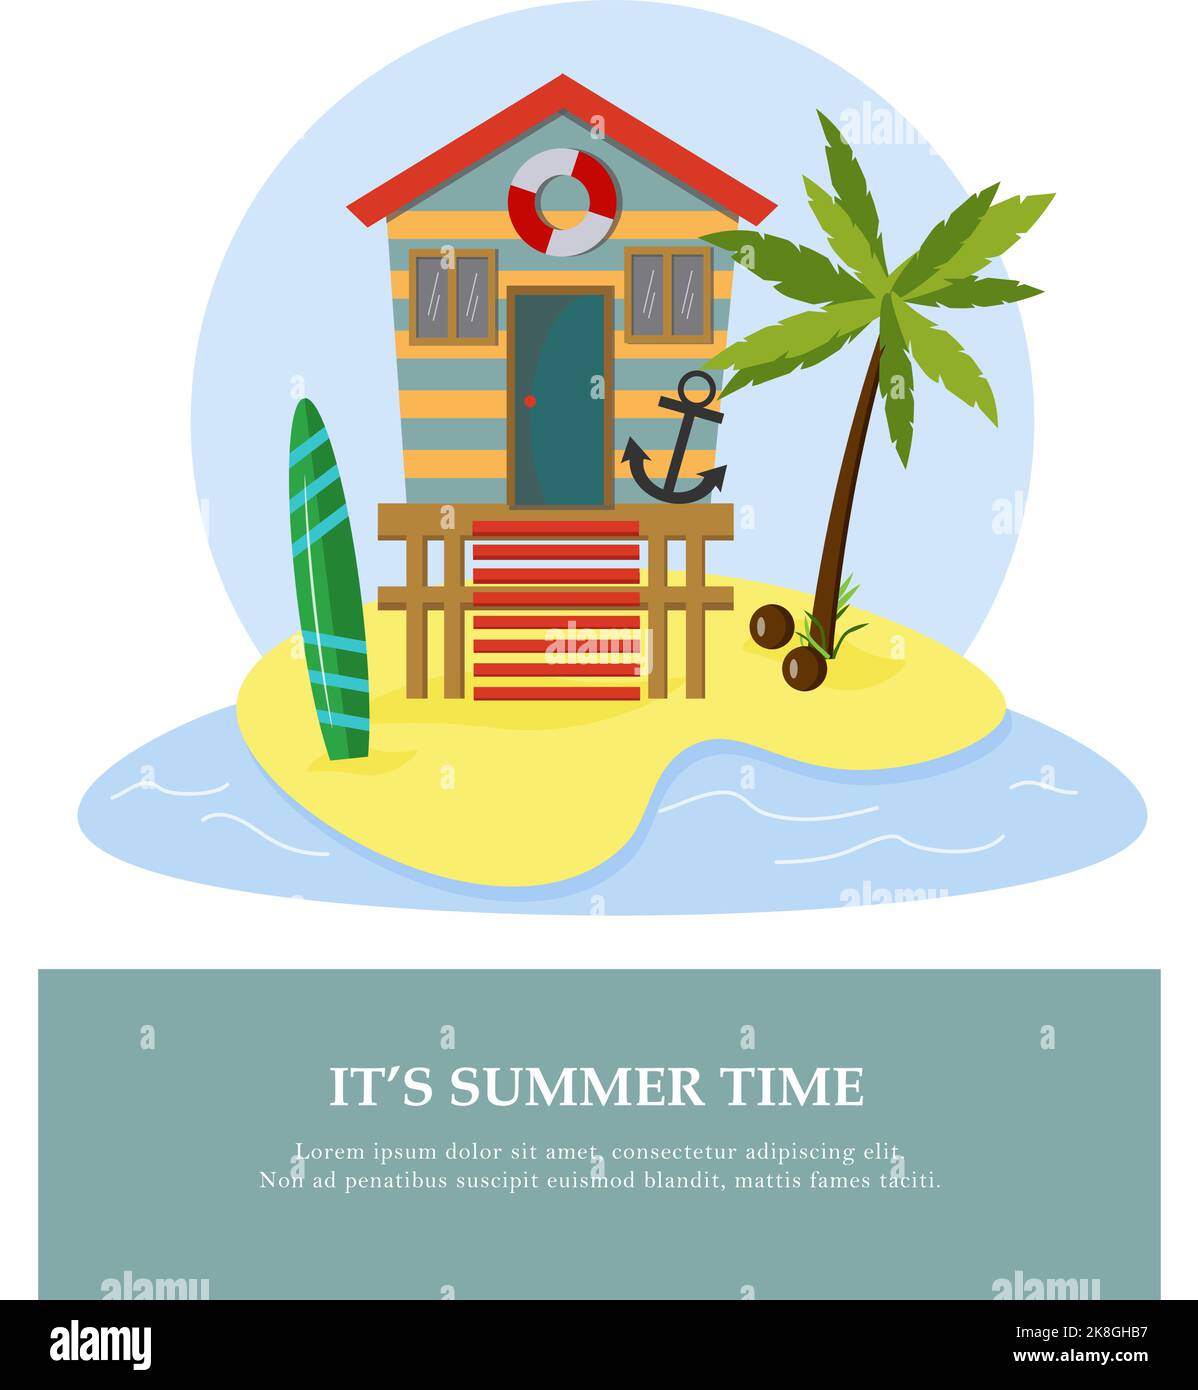 Cartolina con spiaggia bungalow palme e tavola da surf. Illustrazione vettoriale della spiaggia. Caratteristiche per una vacanza al mare sull'oceano. Per l'uso in arredamento, postca Illustrazione Vettoriale